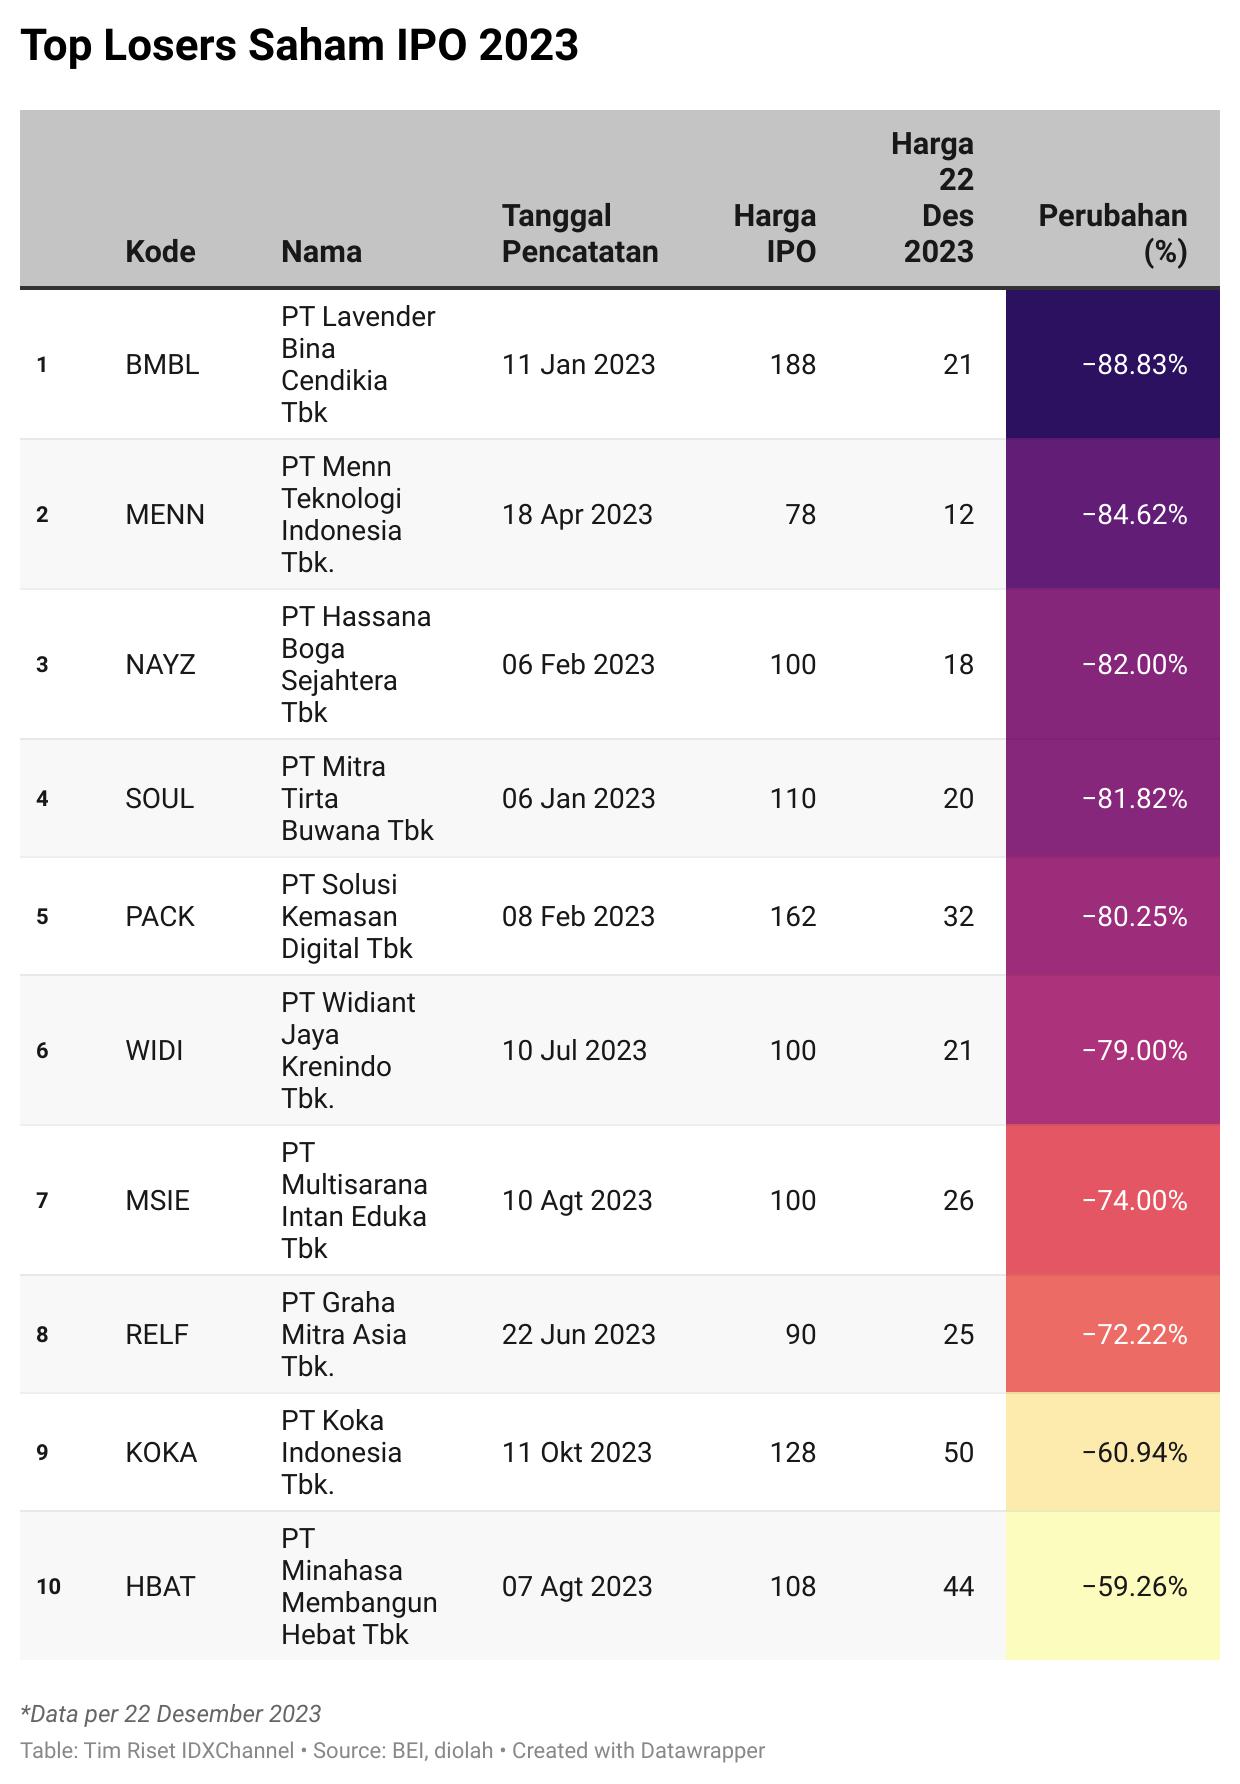 10 Top Losers Saham IPO di 2023, Mayoritas di Bawah Gocap